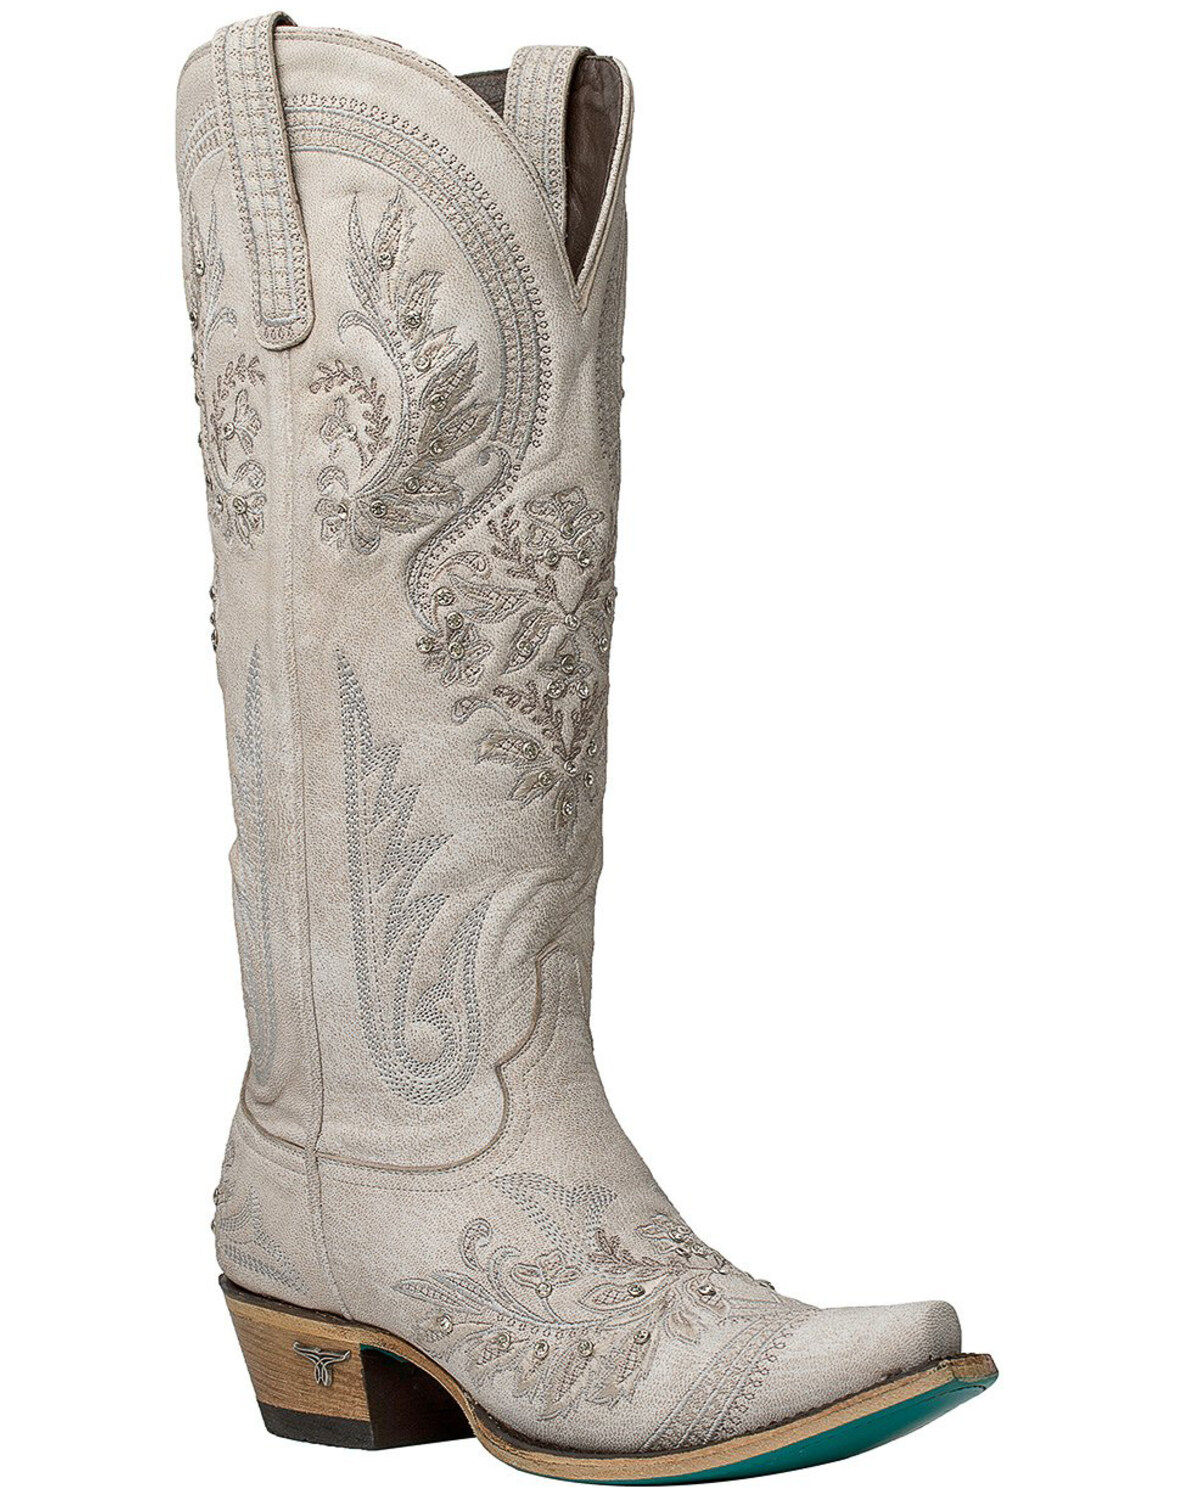 white lace cowboy boots